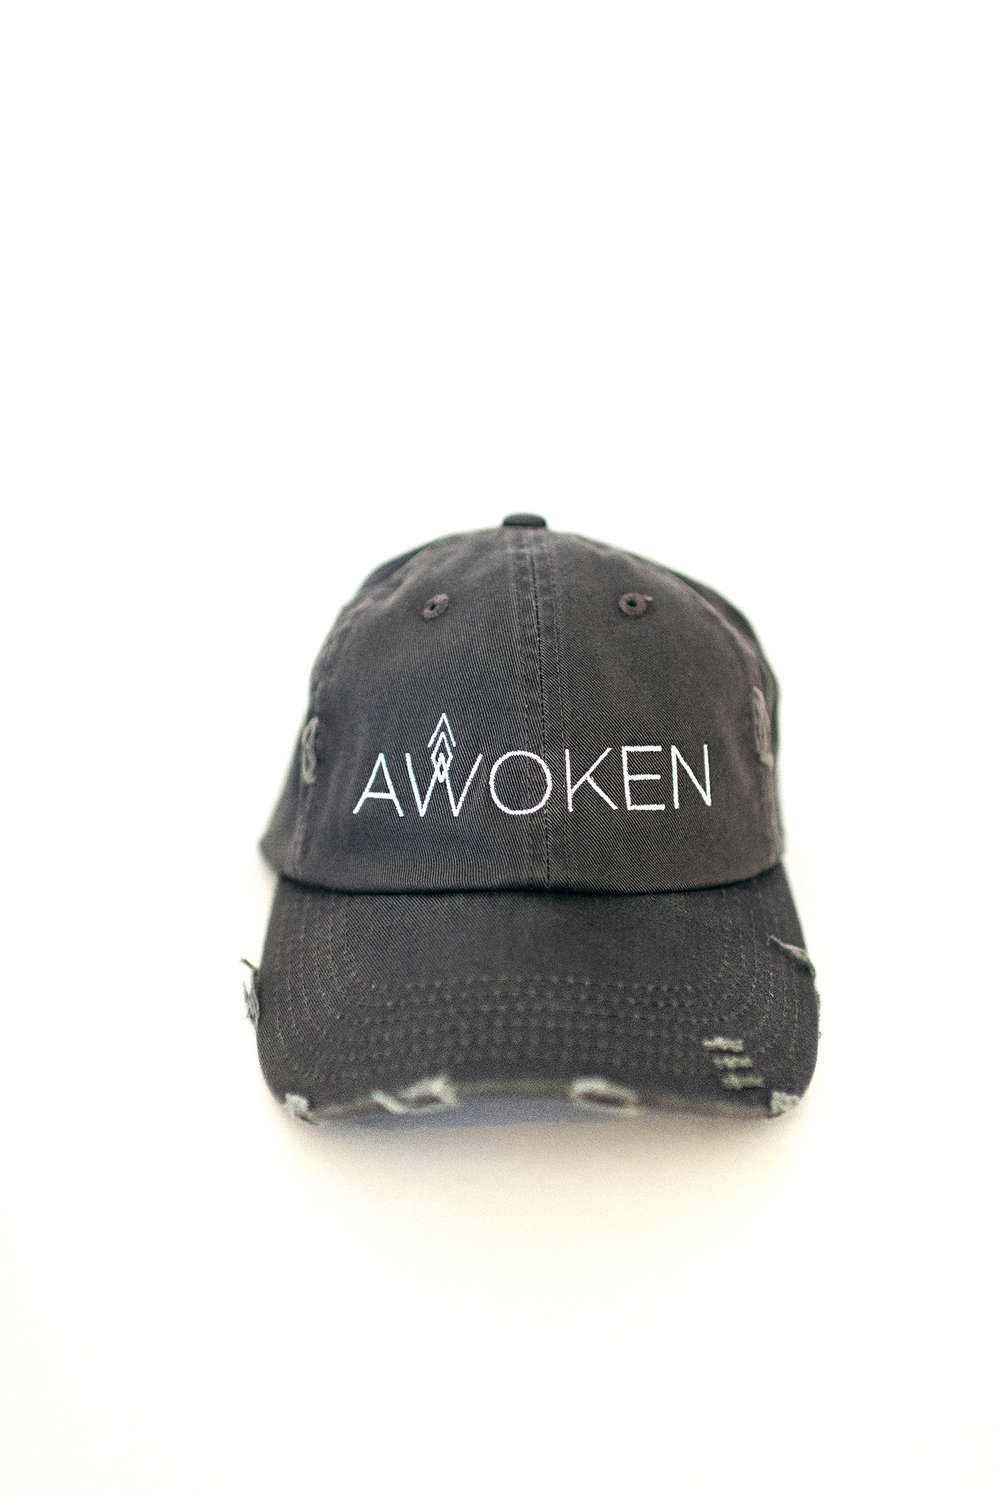 update-awoken-145.jpg